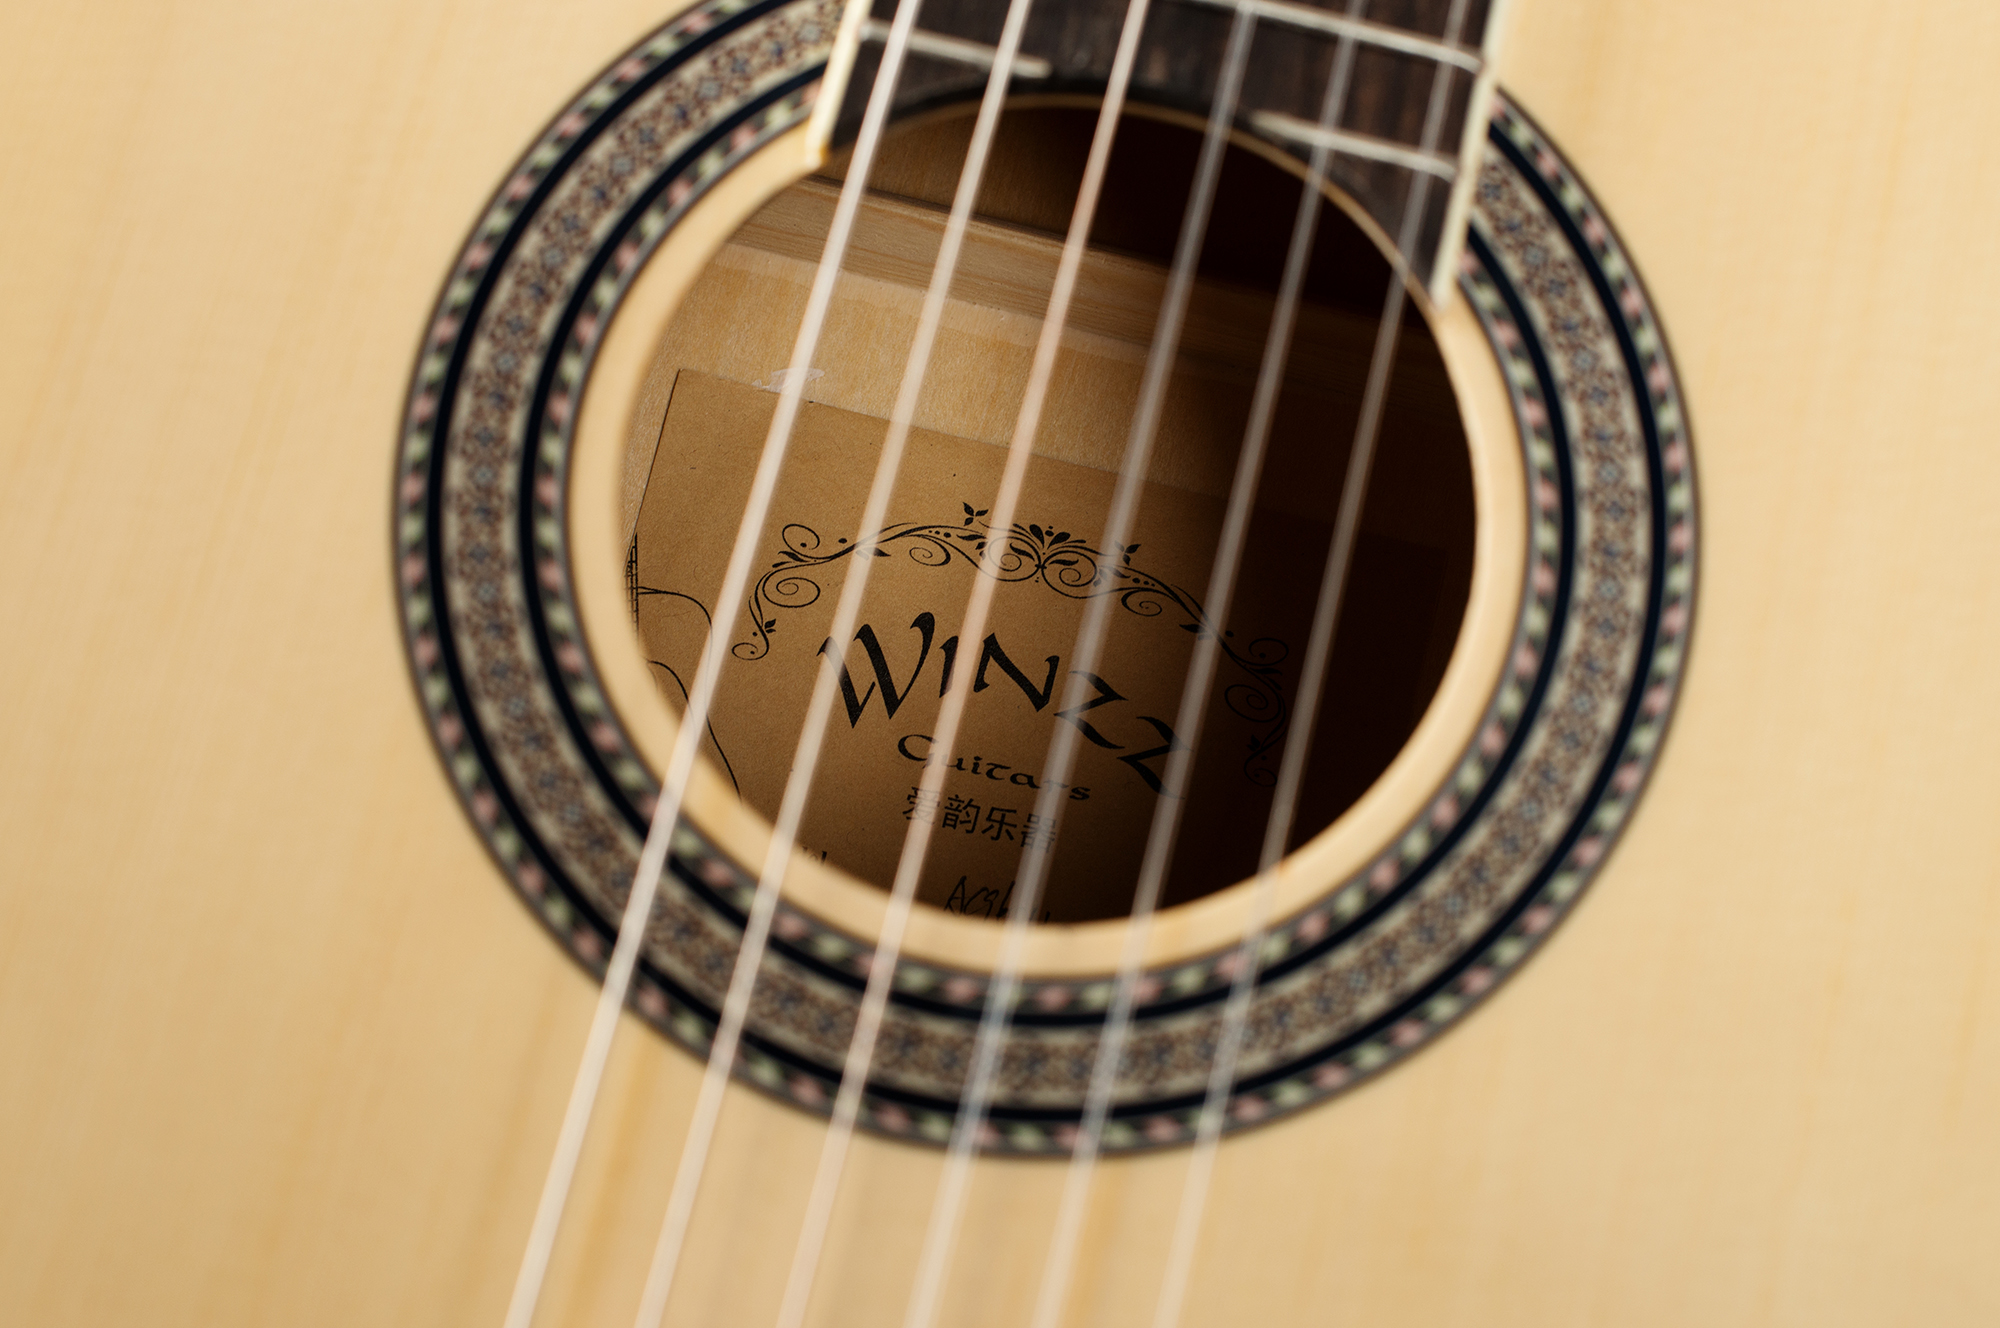 Оптовая 39-дюймовая классическая гитара для начинающих (AC965H)